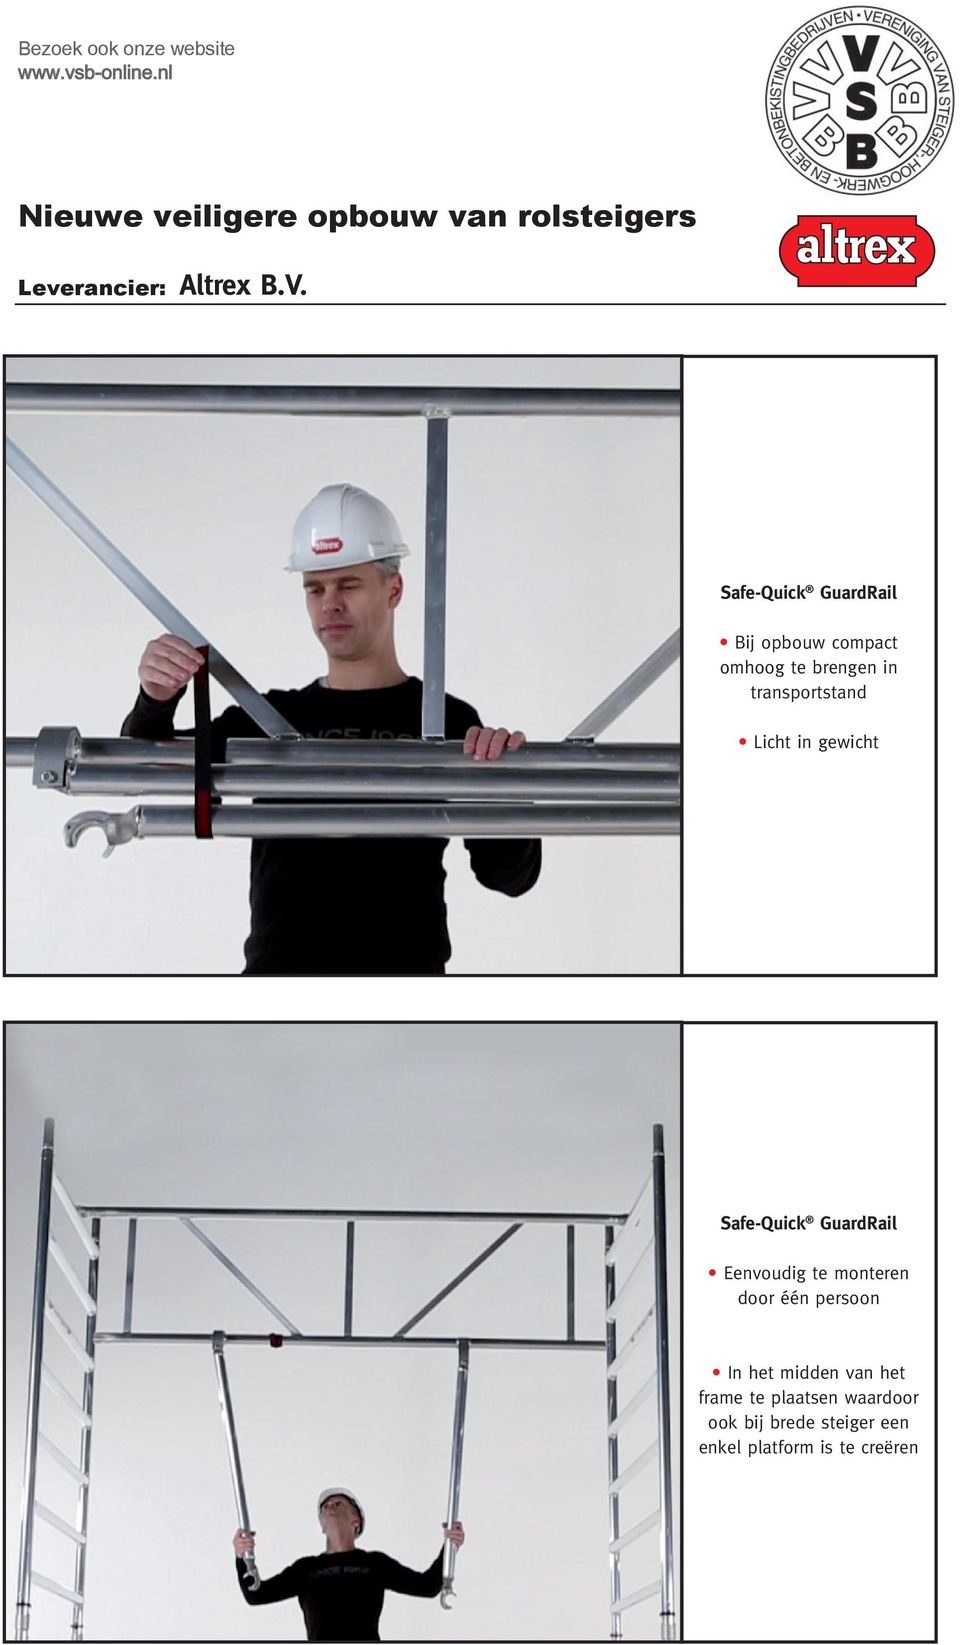 gewicht Ruimte voor bijschrift Safe-Quick GuardRail Eenvoudig te monteren door één persoon